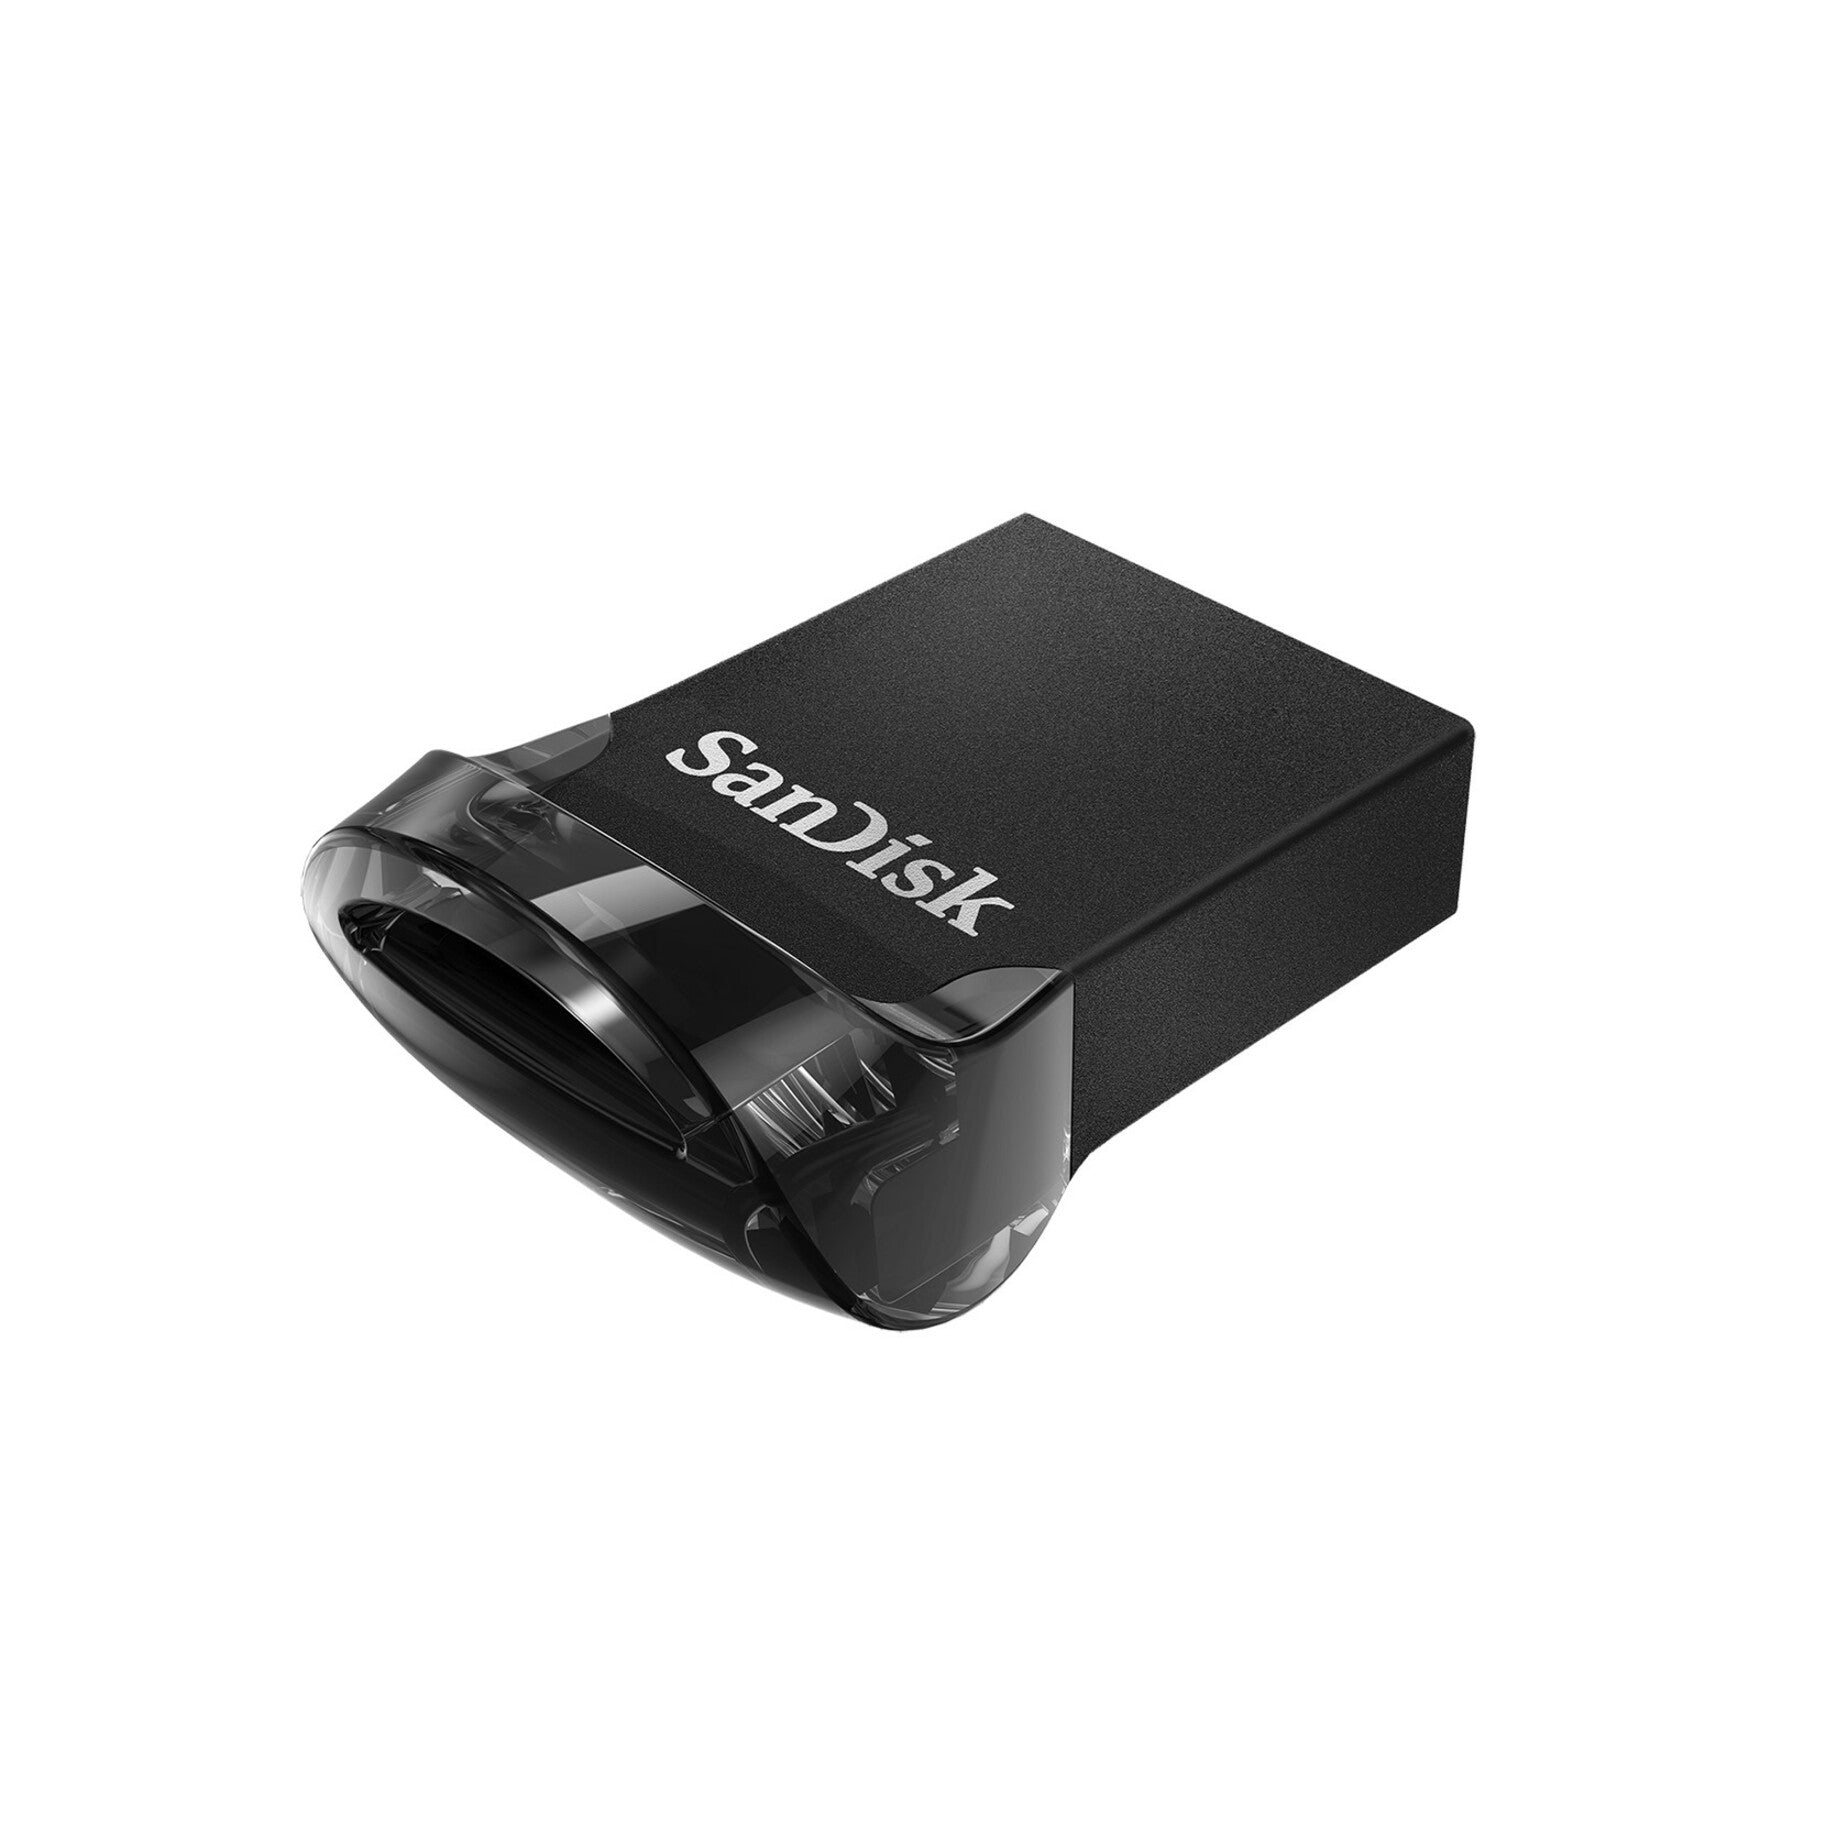 SanDisk SDCZ430-064G-A46 Ultra Fit USB 3.1 Flash Drive 64GB Transfert de données haute vitesse et conception compacte